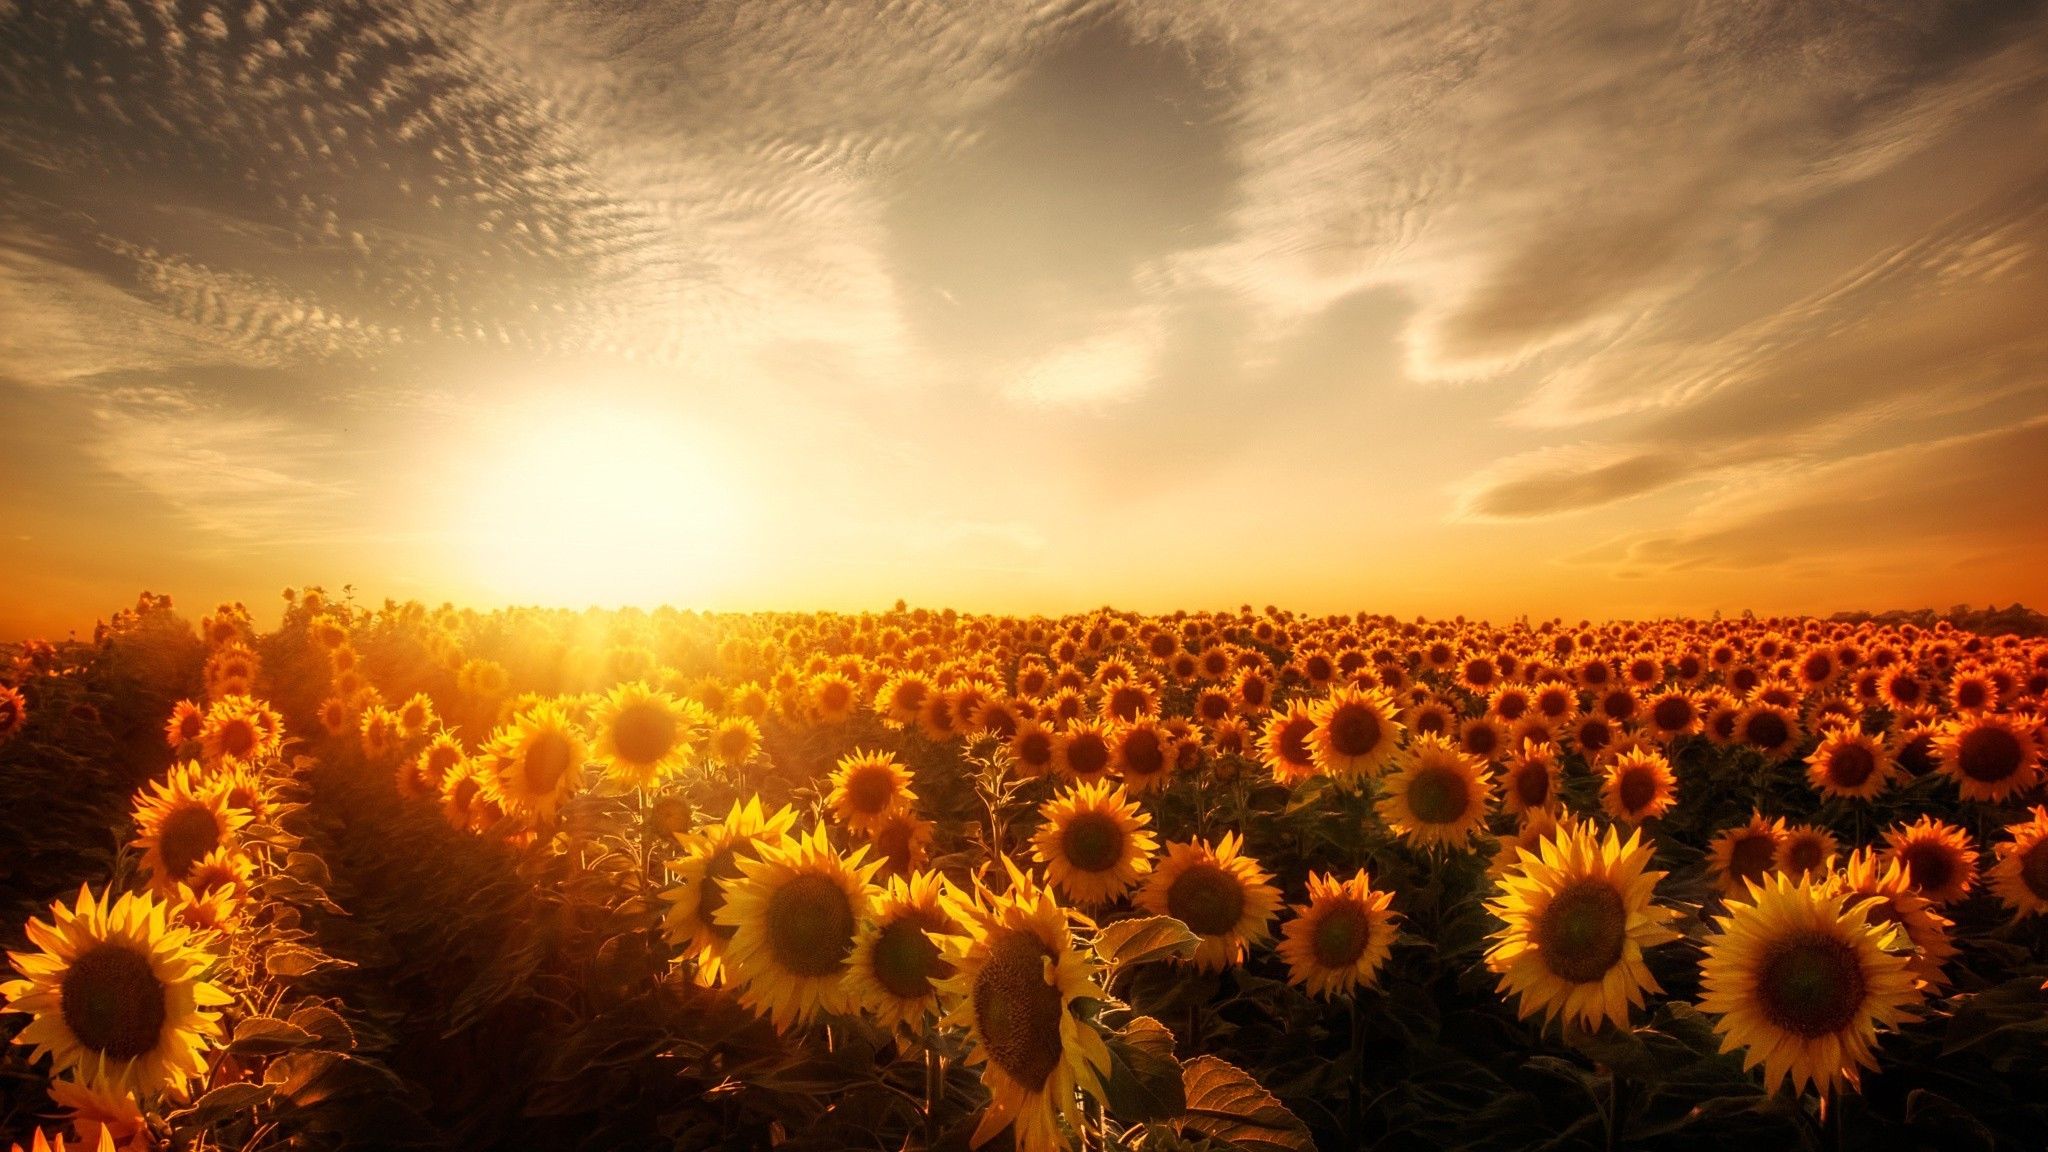 Sunflowers Sunset 2048x1152 Resolution HD 4k Wallpaper